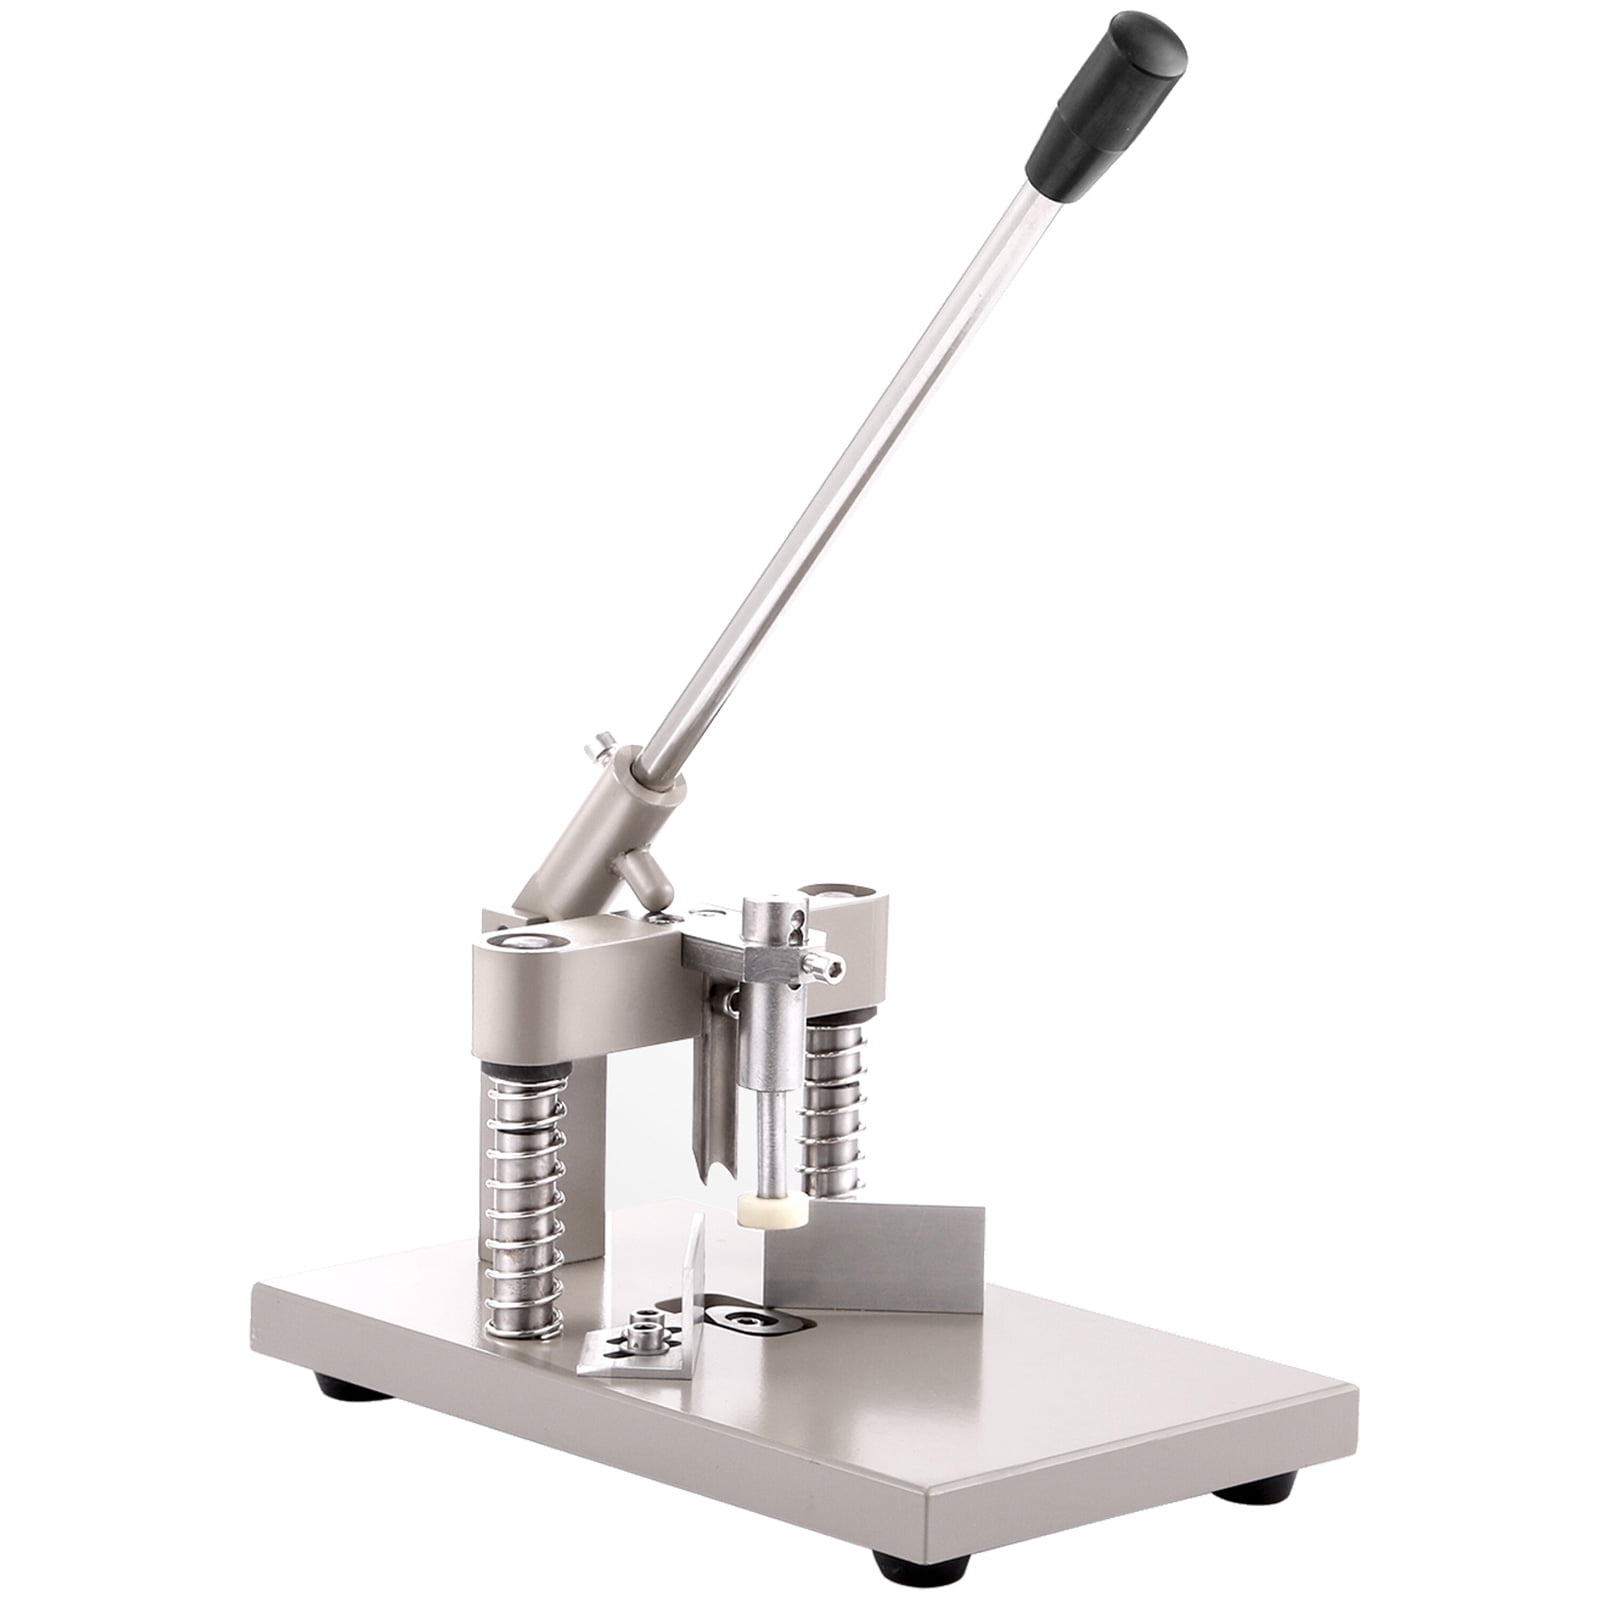 IRONWALLS Corner Rounder Cutter Machine, R6mm R10mm 1.2”/ 30mm